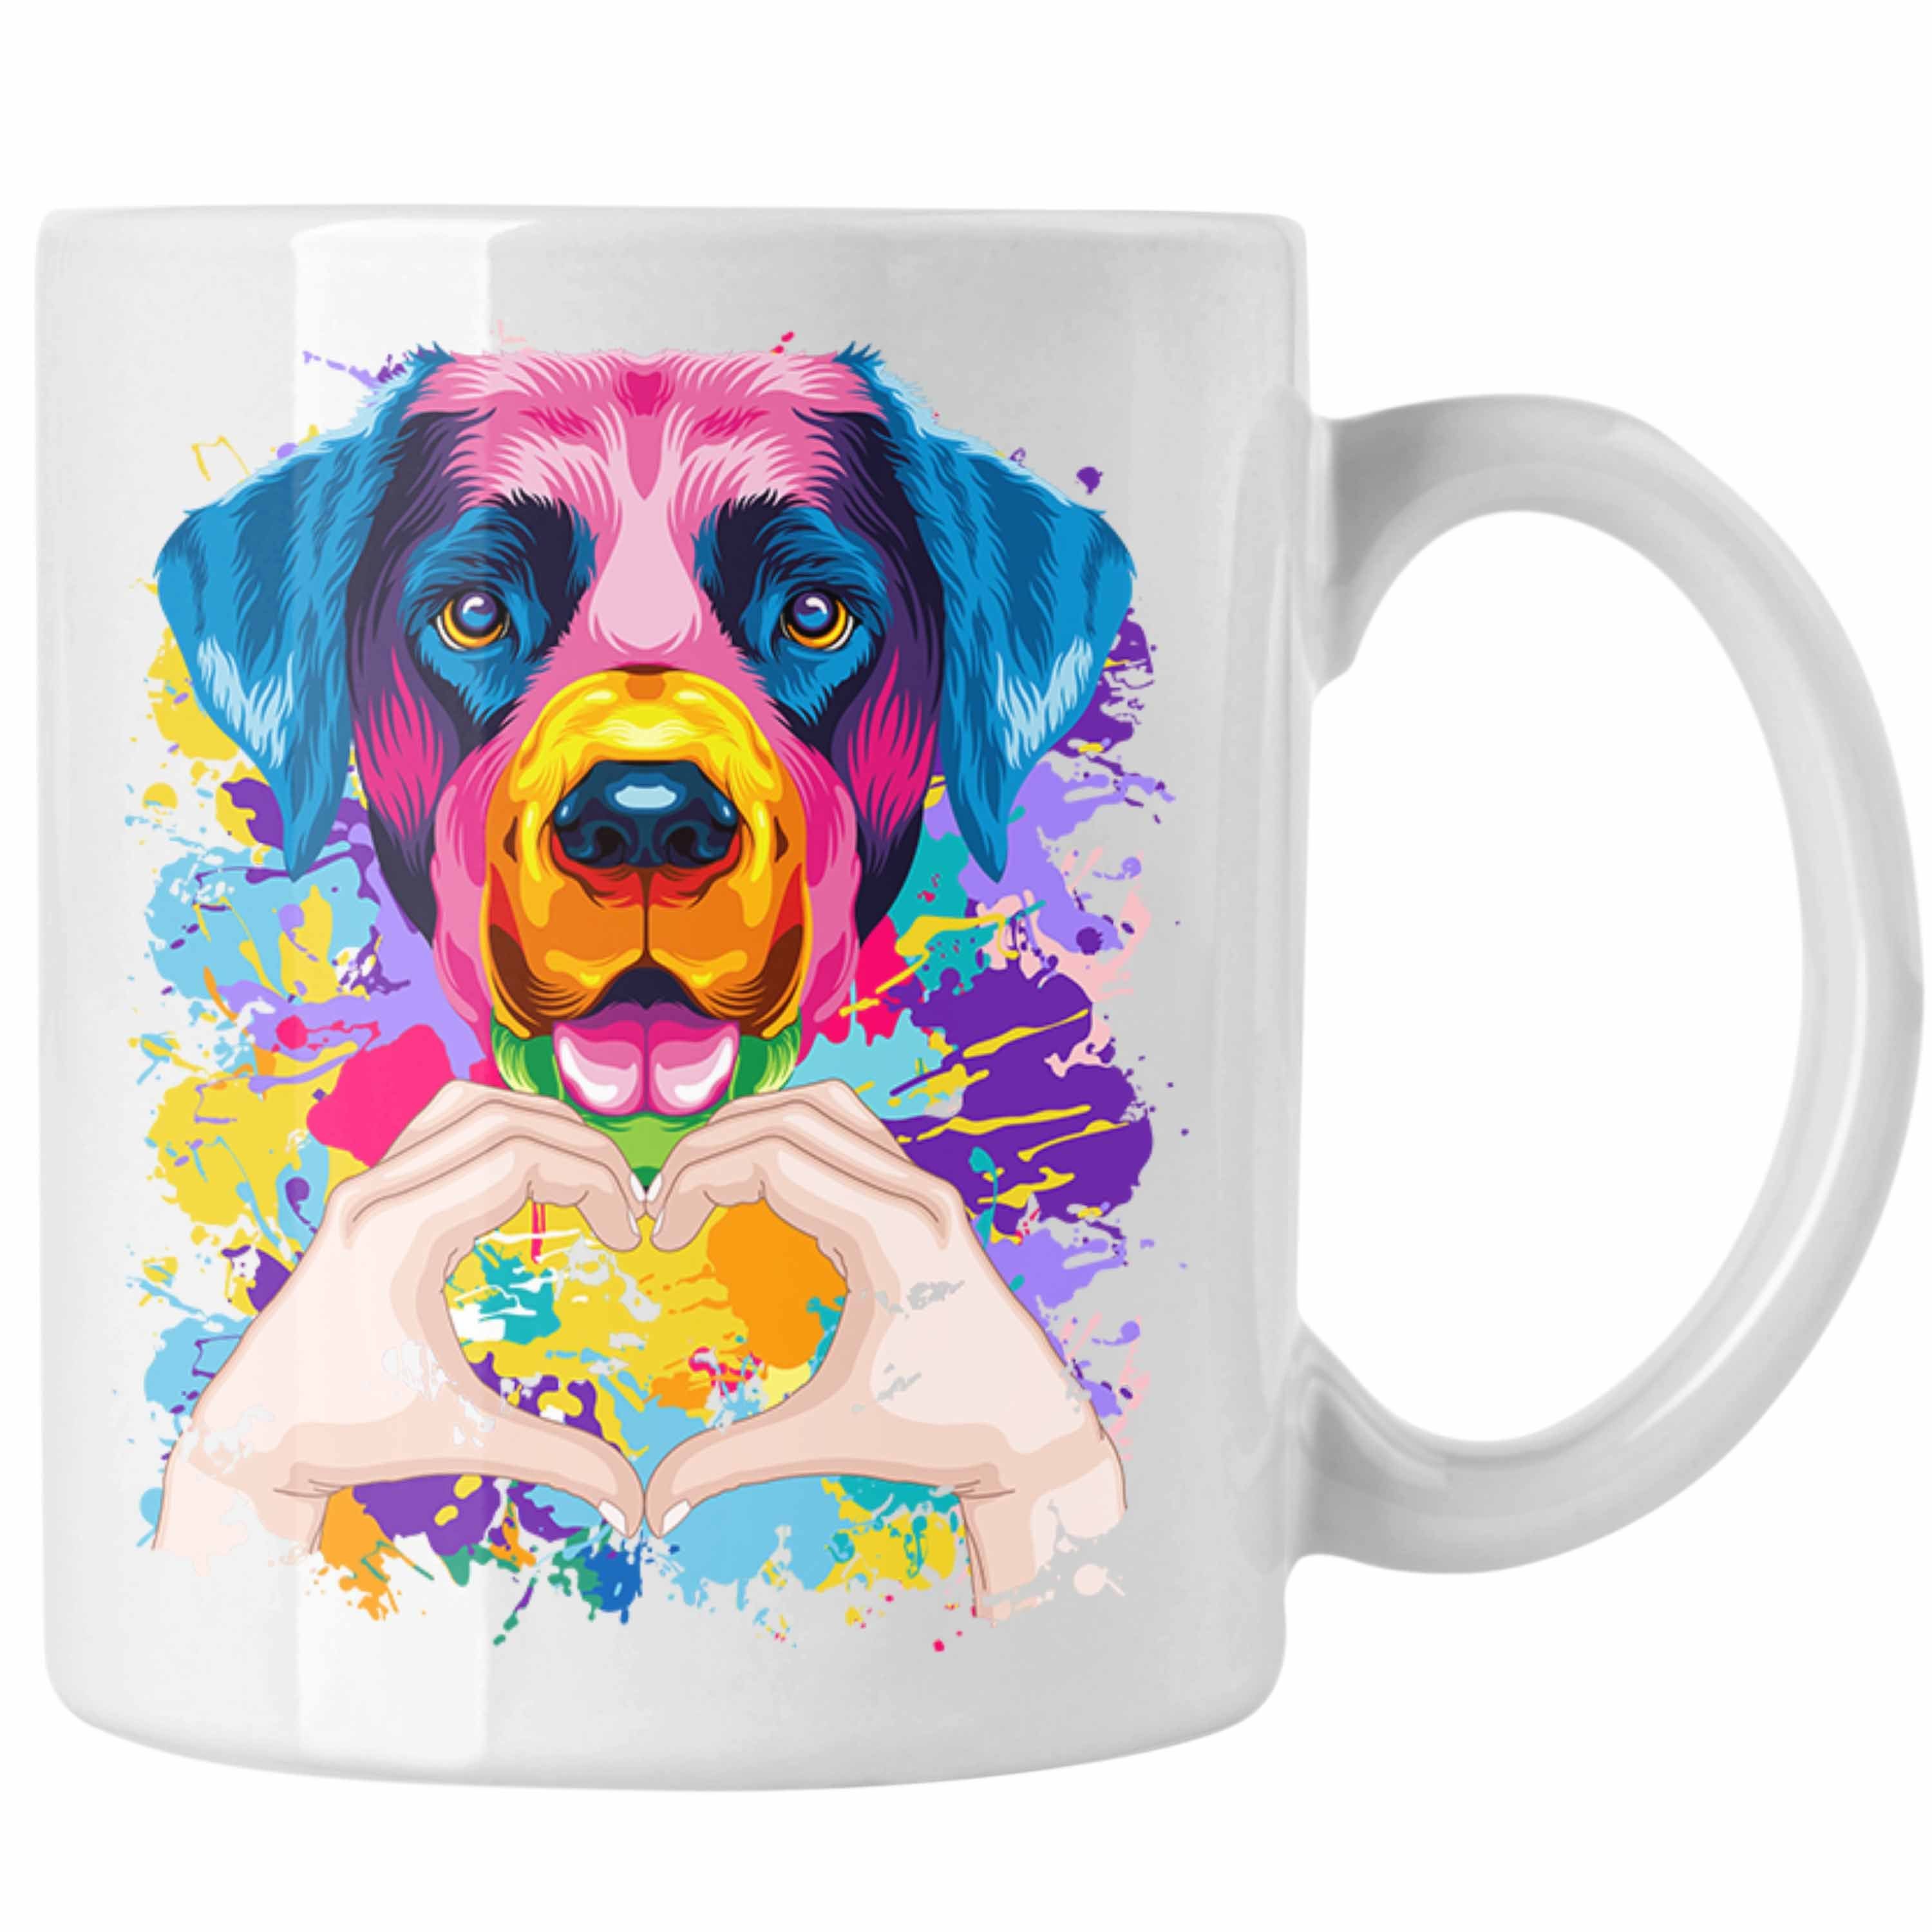 Trendation Tasse Besitzer Geschenkid Lustiger Labrador Tasse Geschenk Farbe Spruch Weiss Love